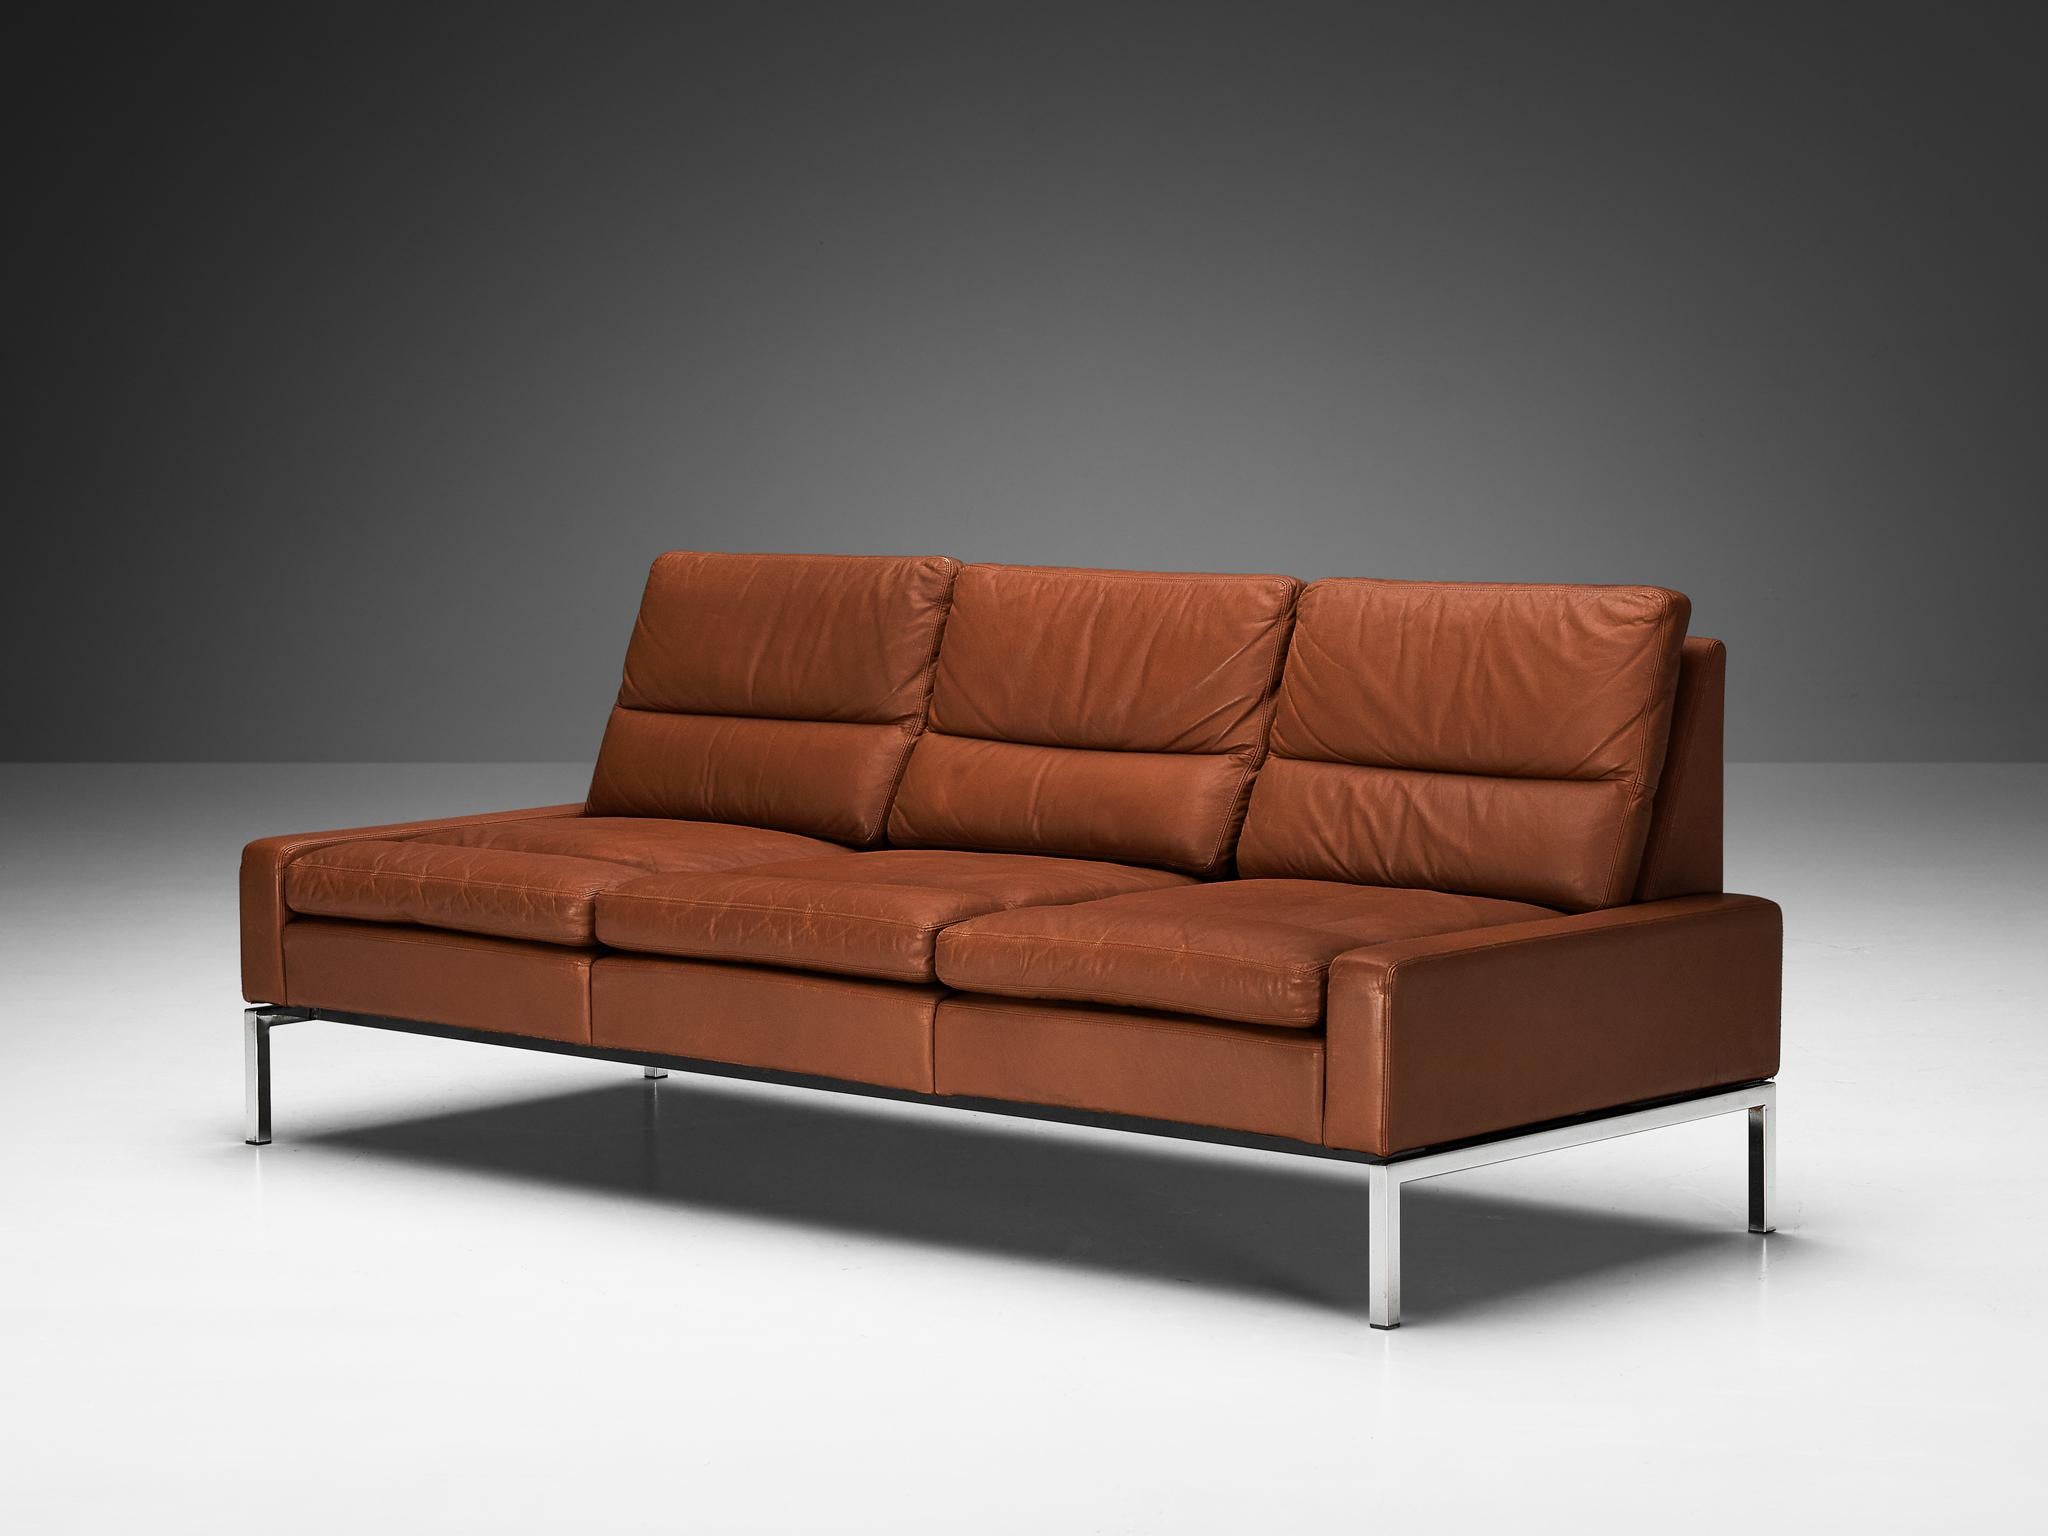 Wilkhahn, Sofa, Leder, verchromtes Metall, Deutschland, 1960er Jahre

Dieses schlichte, moderne Sofa wird von Wilkhahn hergestellt und zeichnet sich durch eine solide Konstruktion mit einer auffälligen Gegenüberstellung von Formen und Proportionen